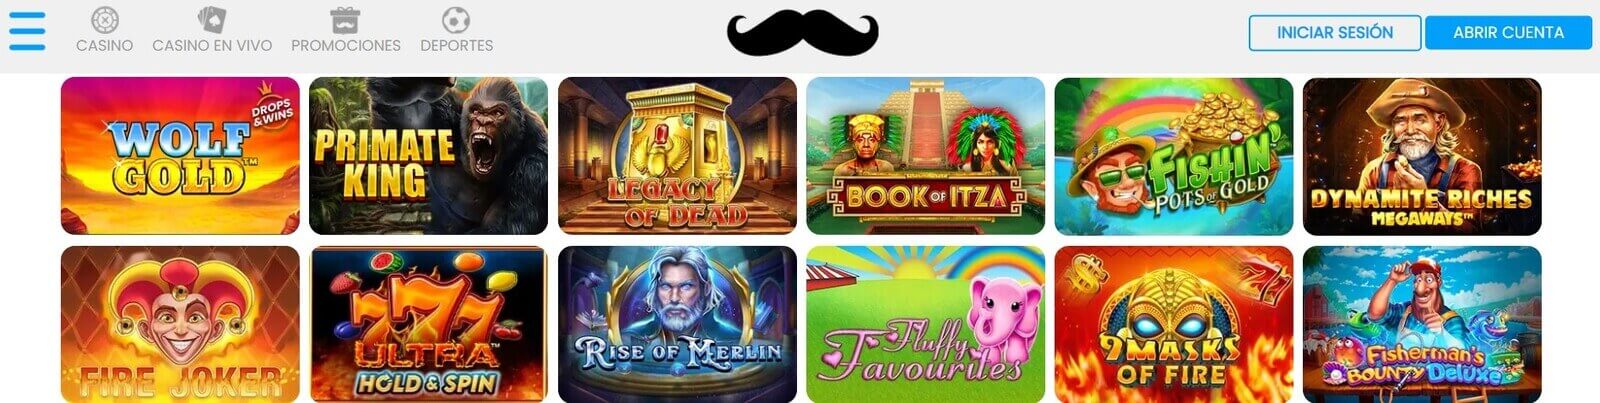 Jugar a las tragamonedas de Mr.Play Casino online